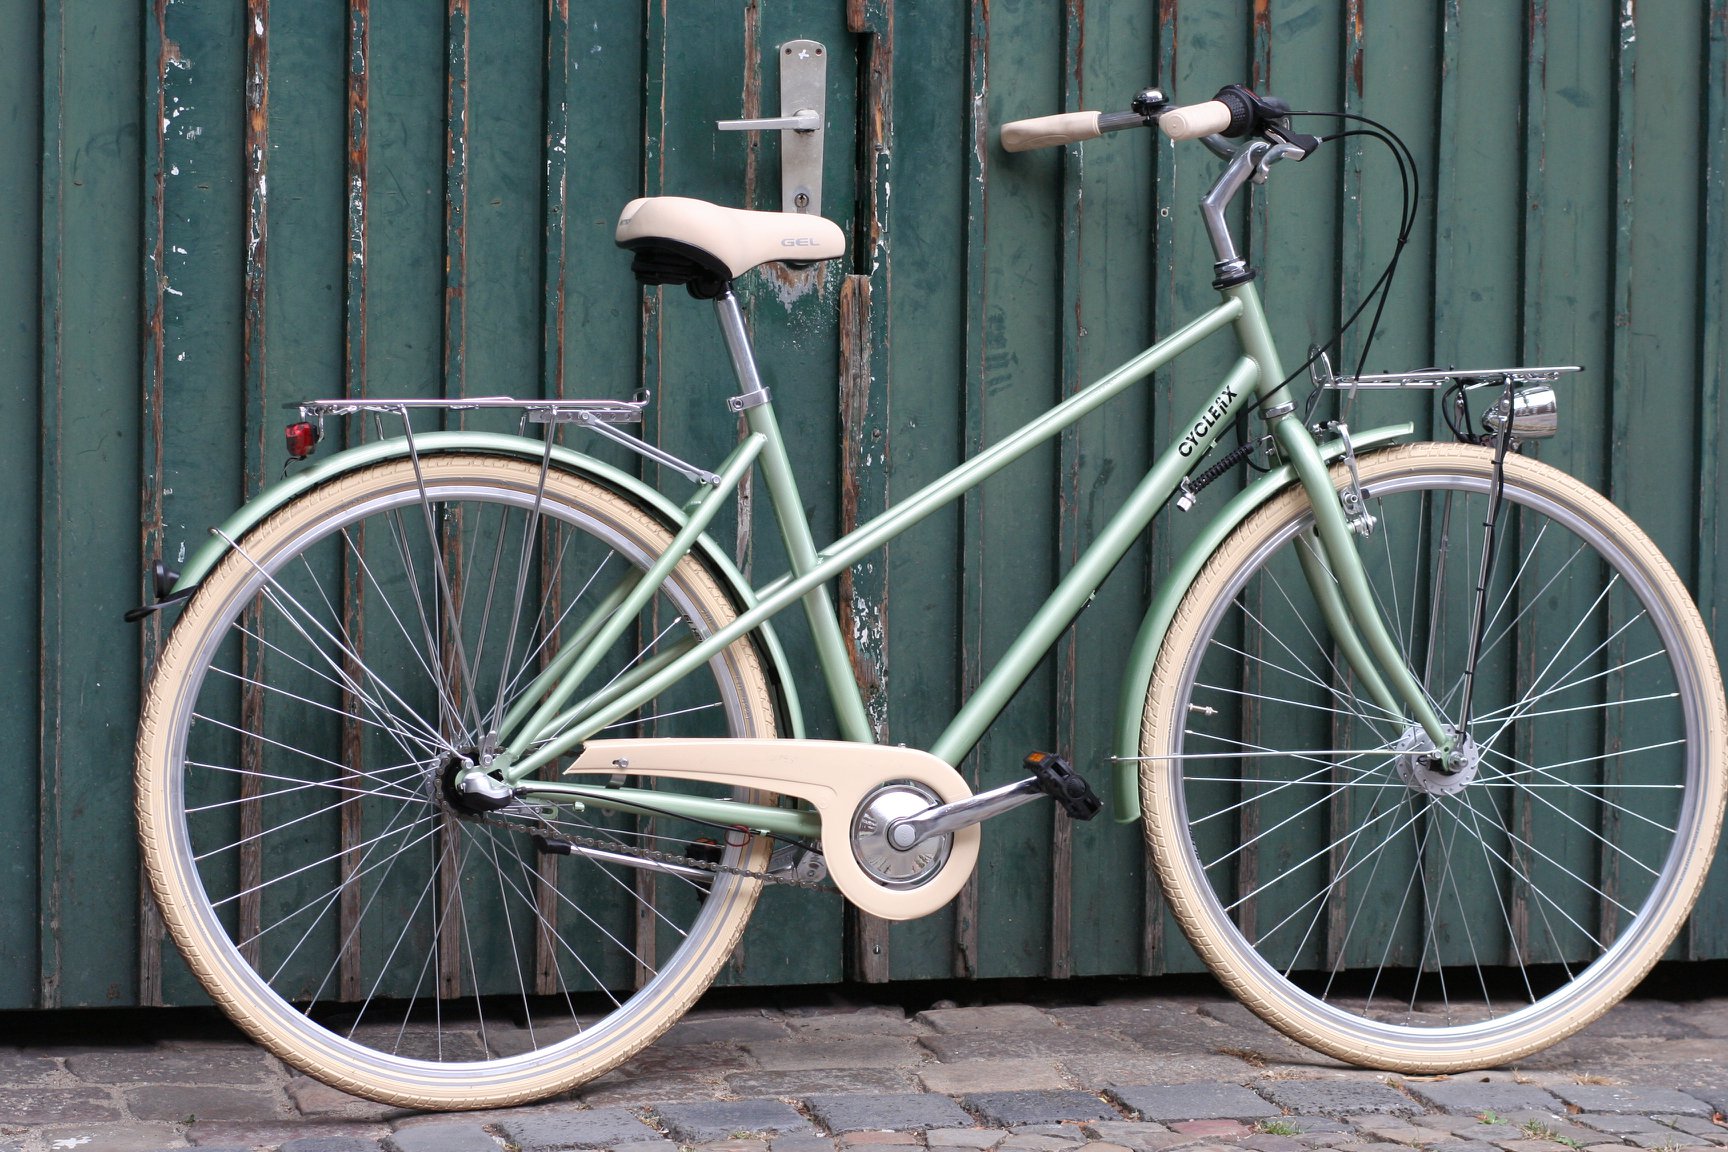 Cyclefix Urban Damen City Bike Eur 449,00